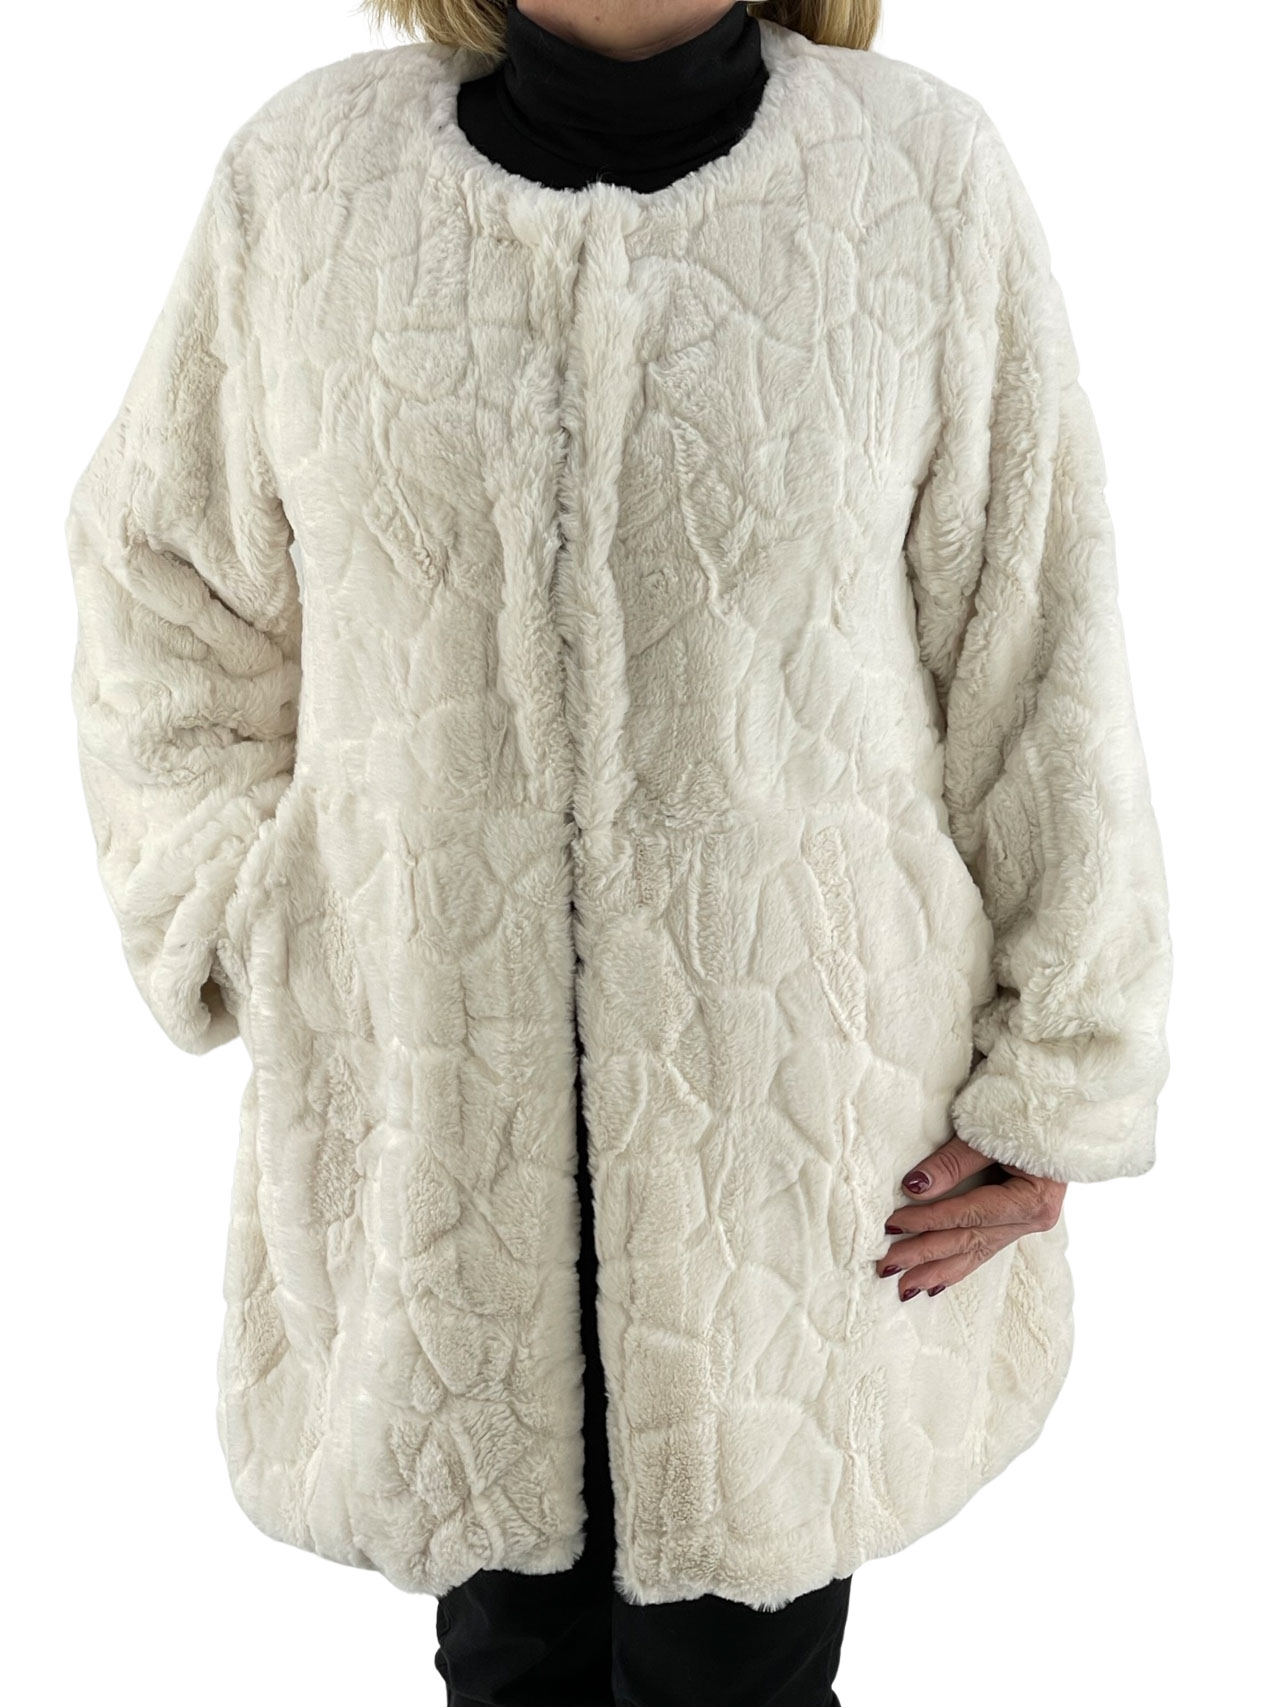 Παλτό γυναικείο γούνινο κωδ. 40053 μπροστινή όψη- εκρού